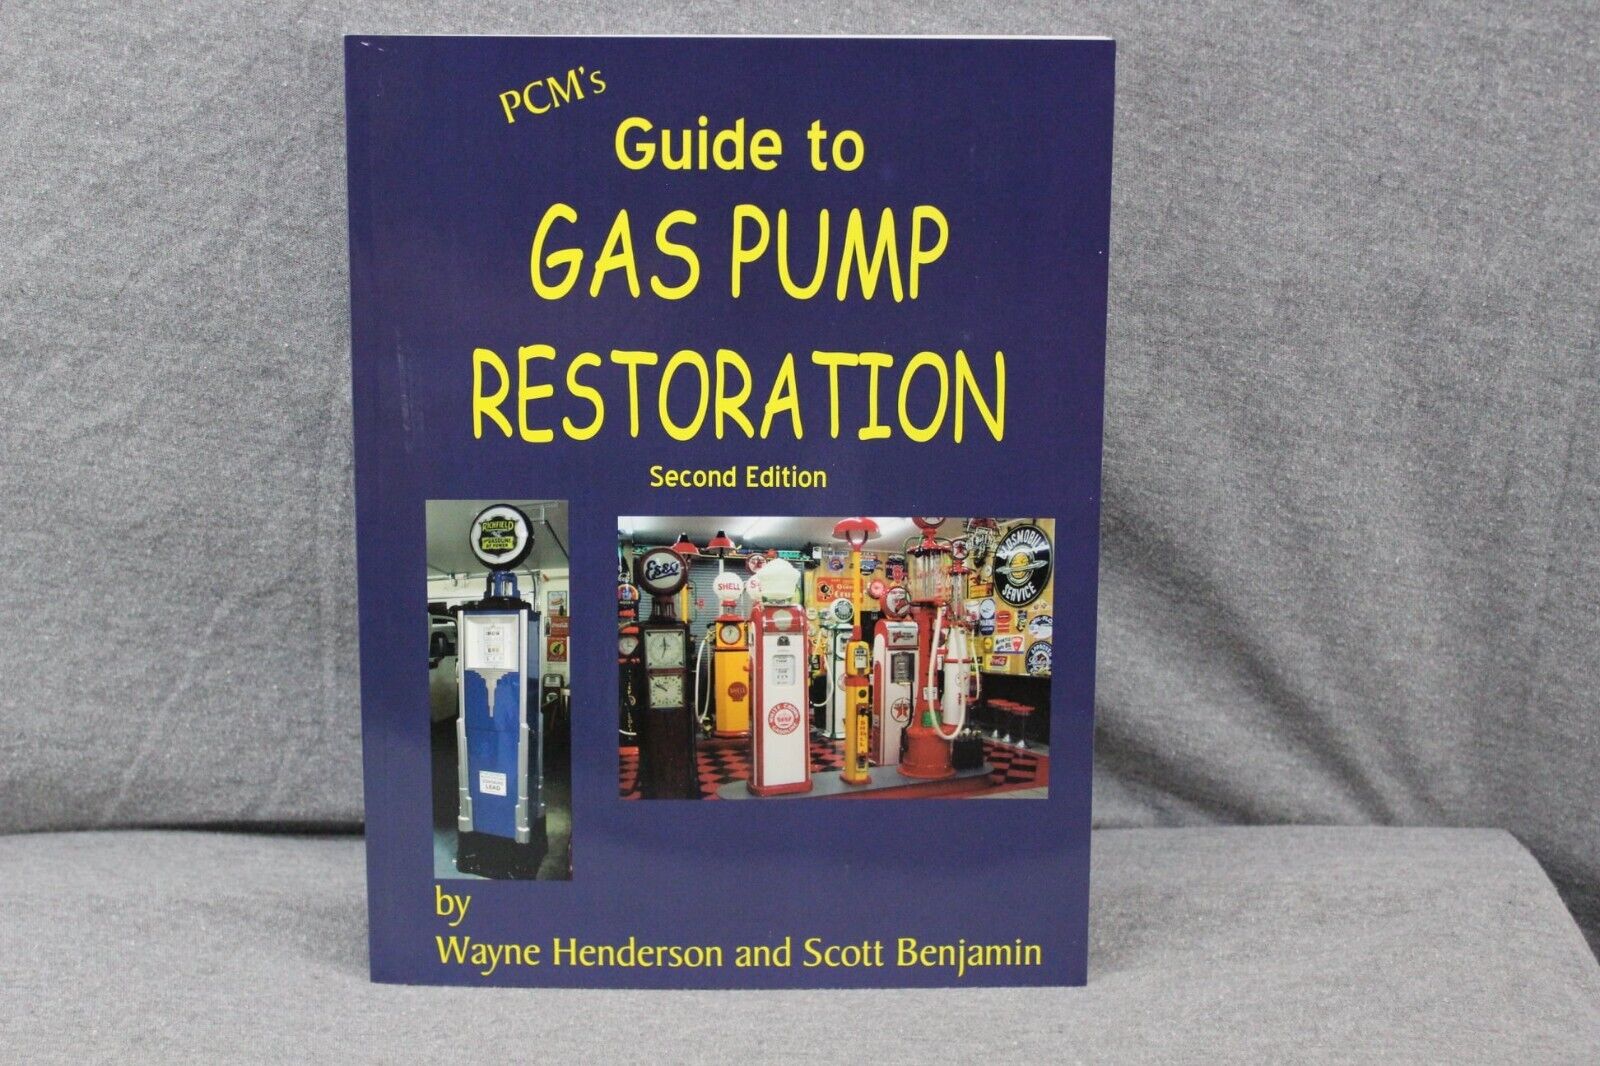 GAS PUMP RESTORATION GUIDE